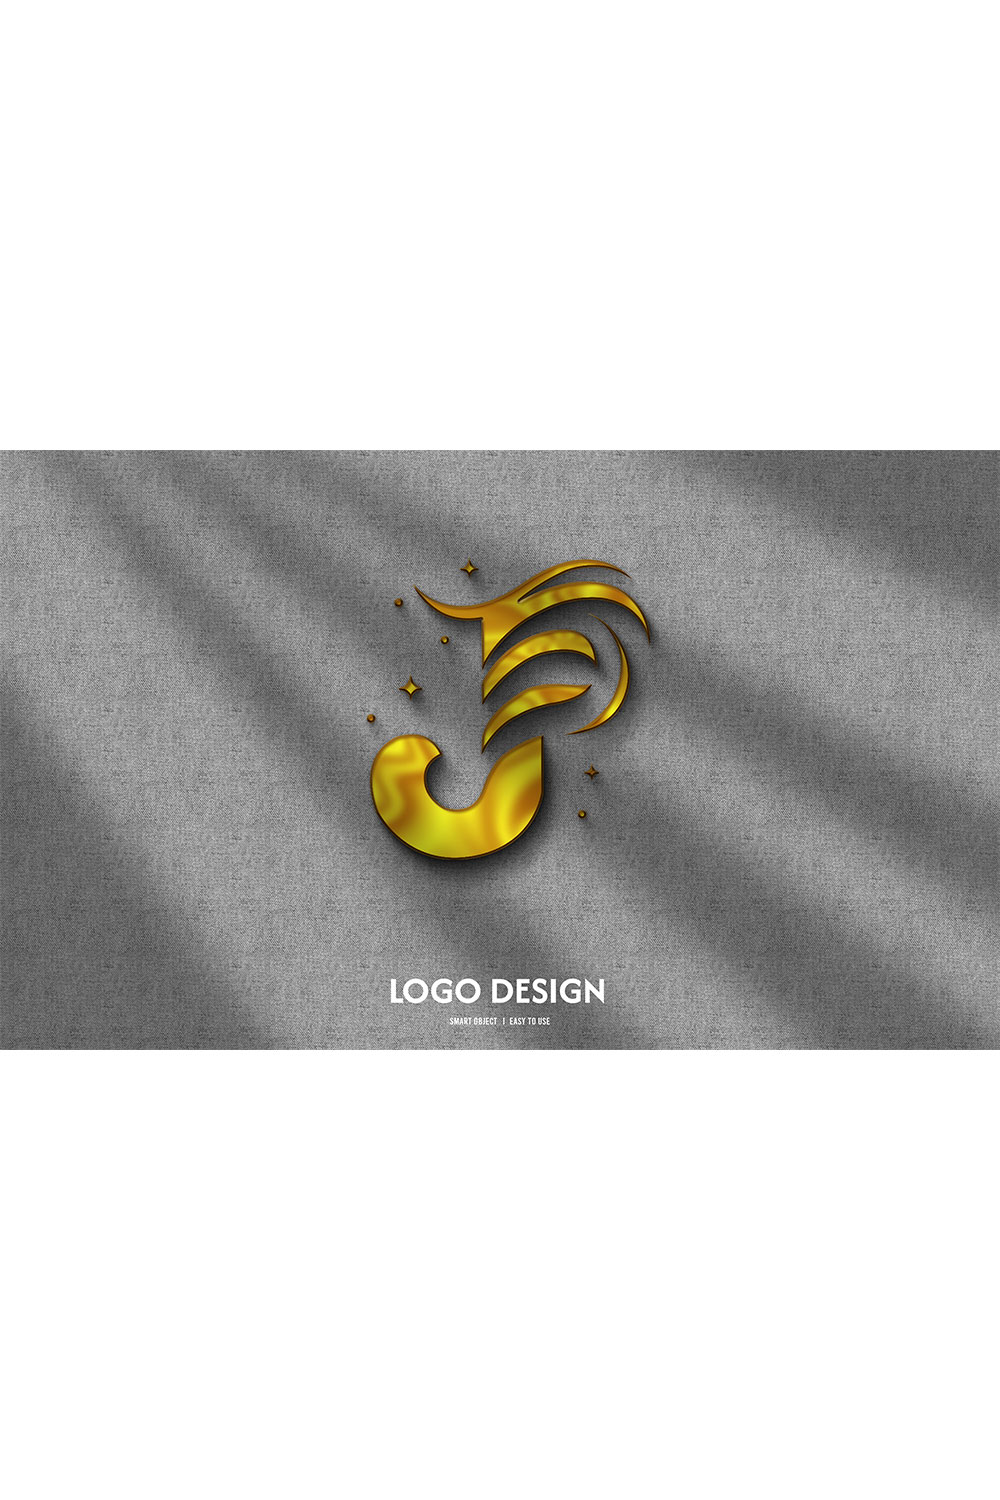 J LOgo Complete Design pinterest preview image.